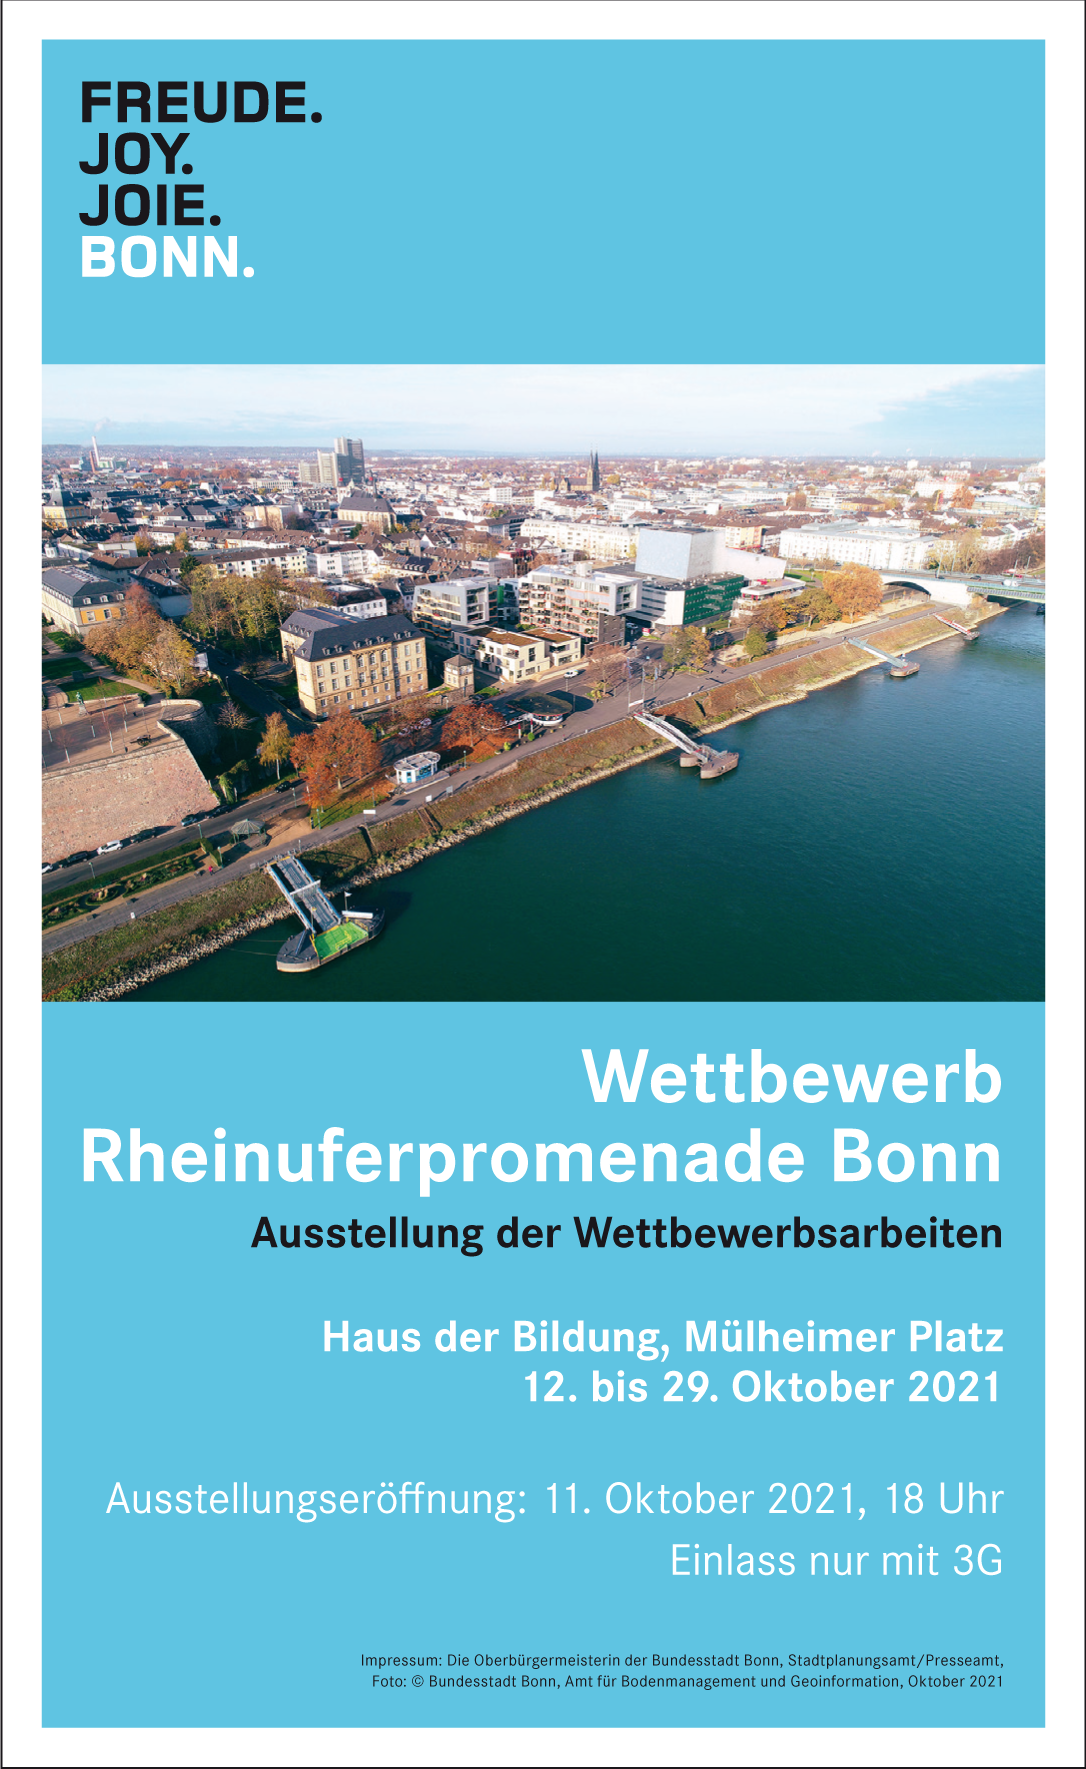 Das Bild zeigt eine Aufnahme des Bonner Rheinufers aus der Luft. Darunter stehen die Ausstellungsdaten für die Wettbewerbsergebnisse.